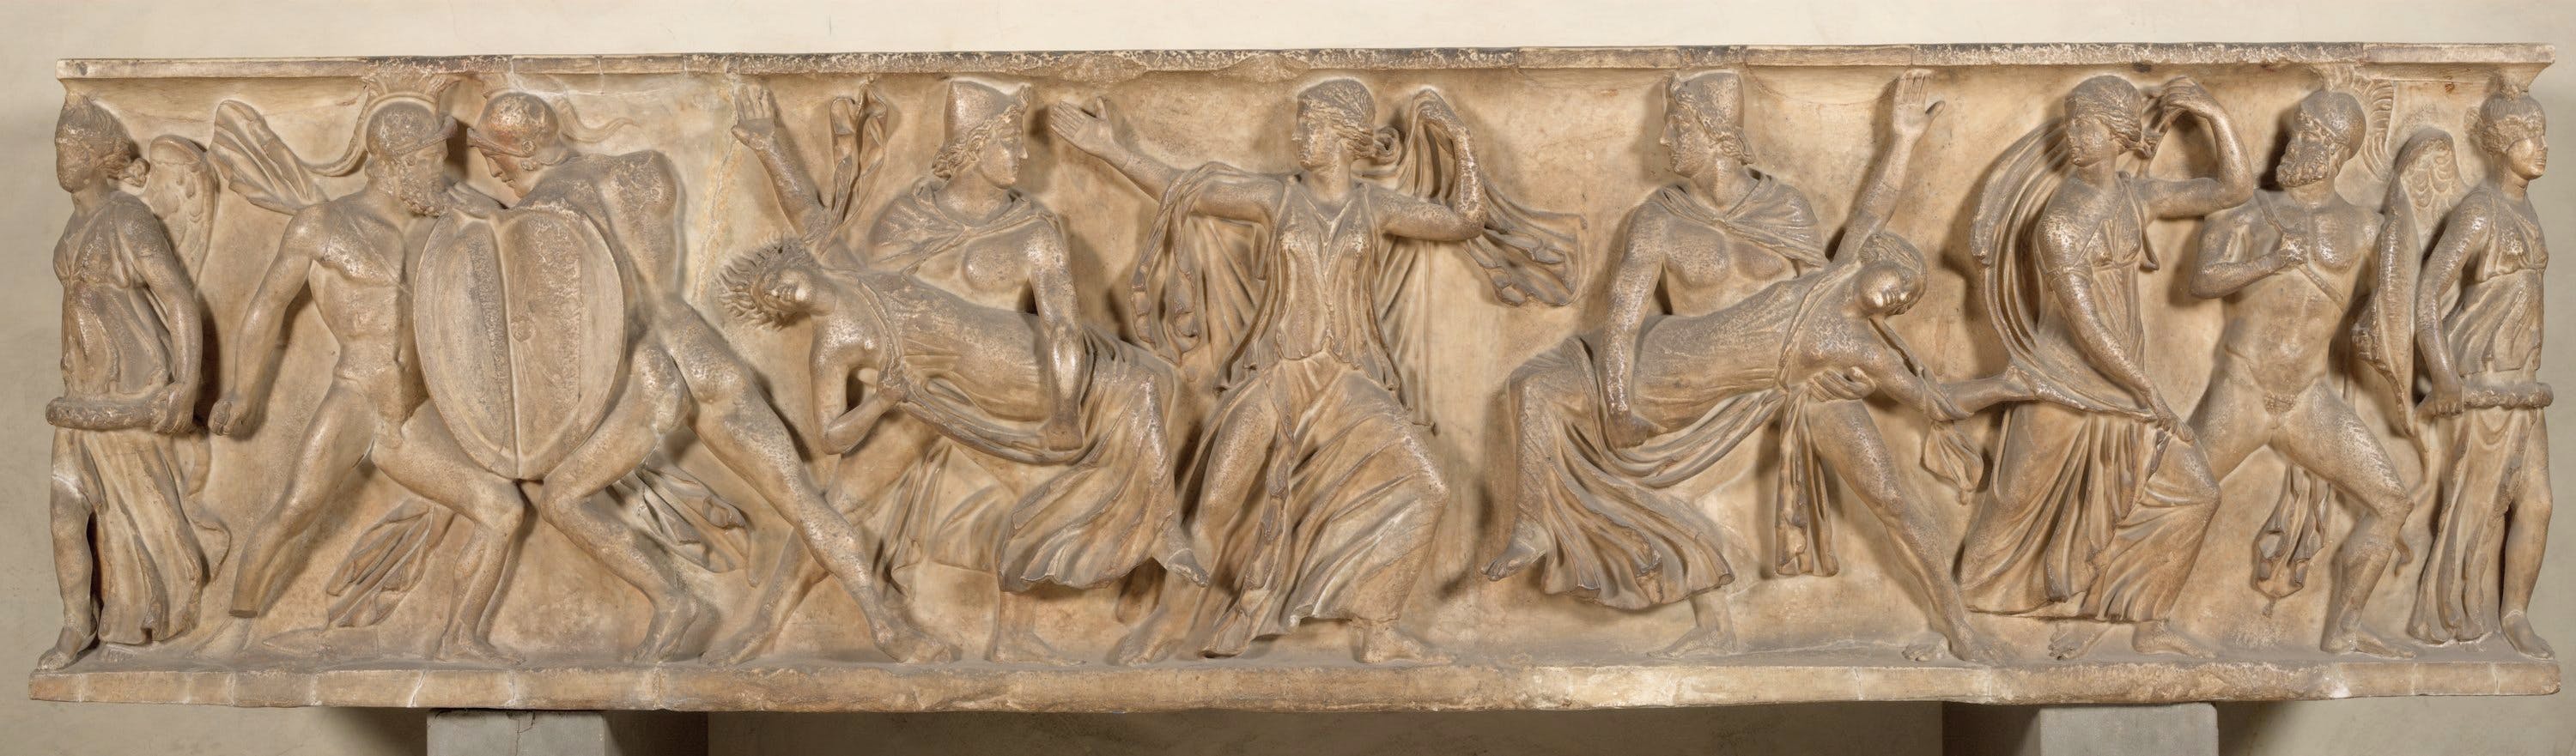 Sarcofago Matrimonio dei Dioscuri e le Leucippidi